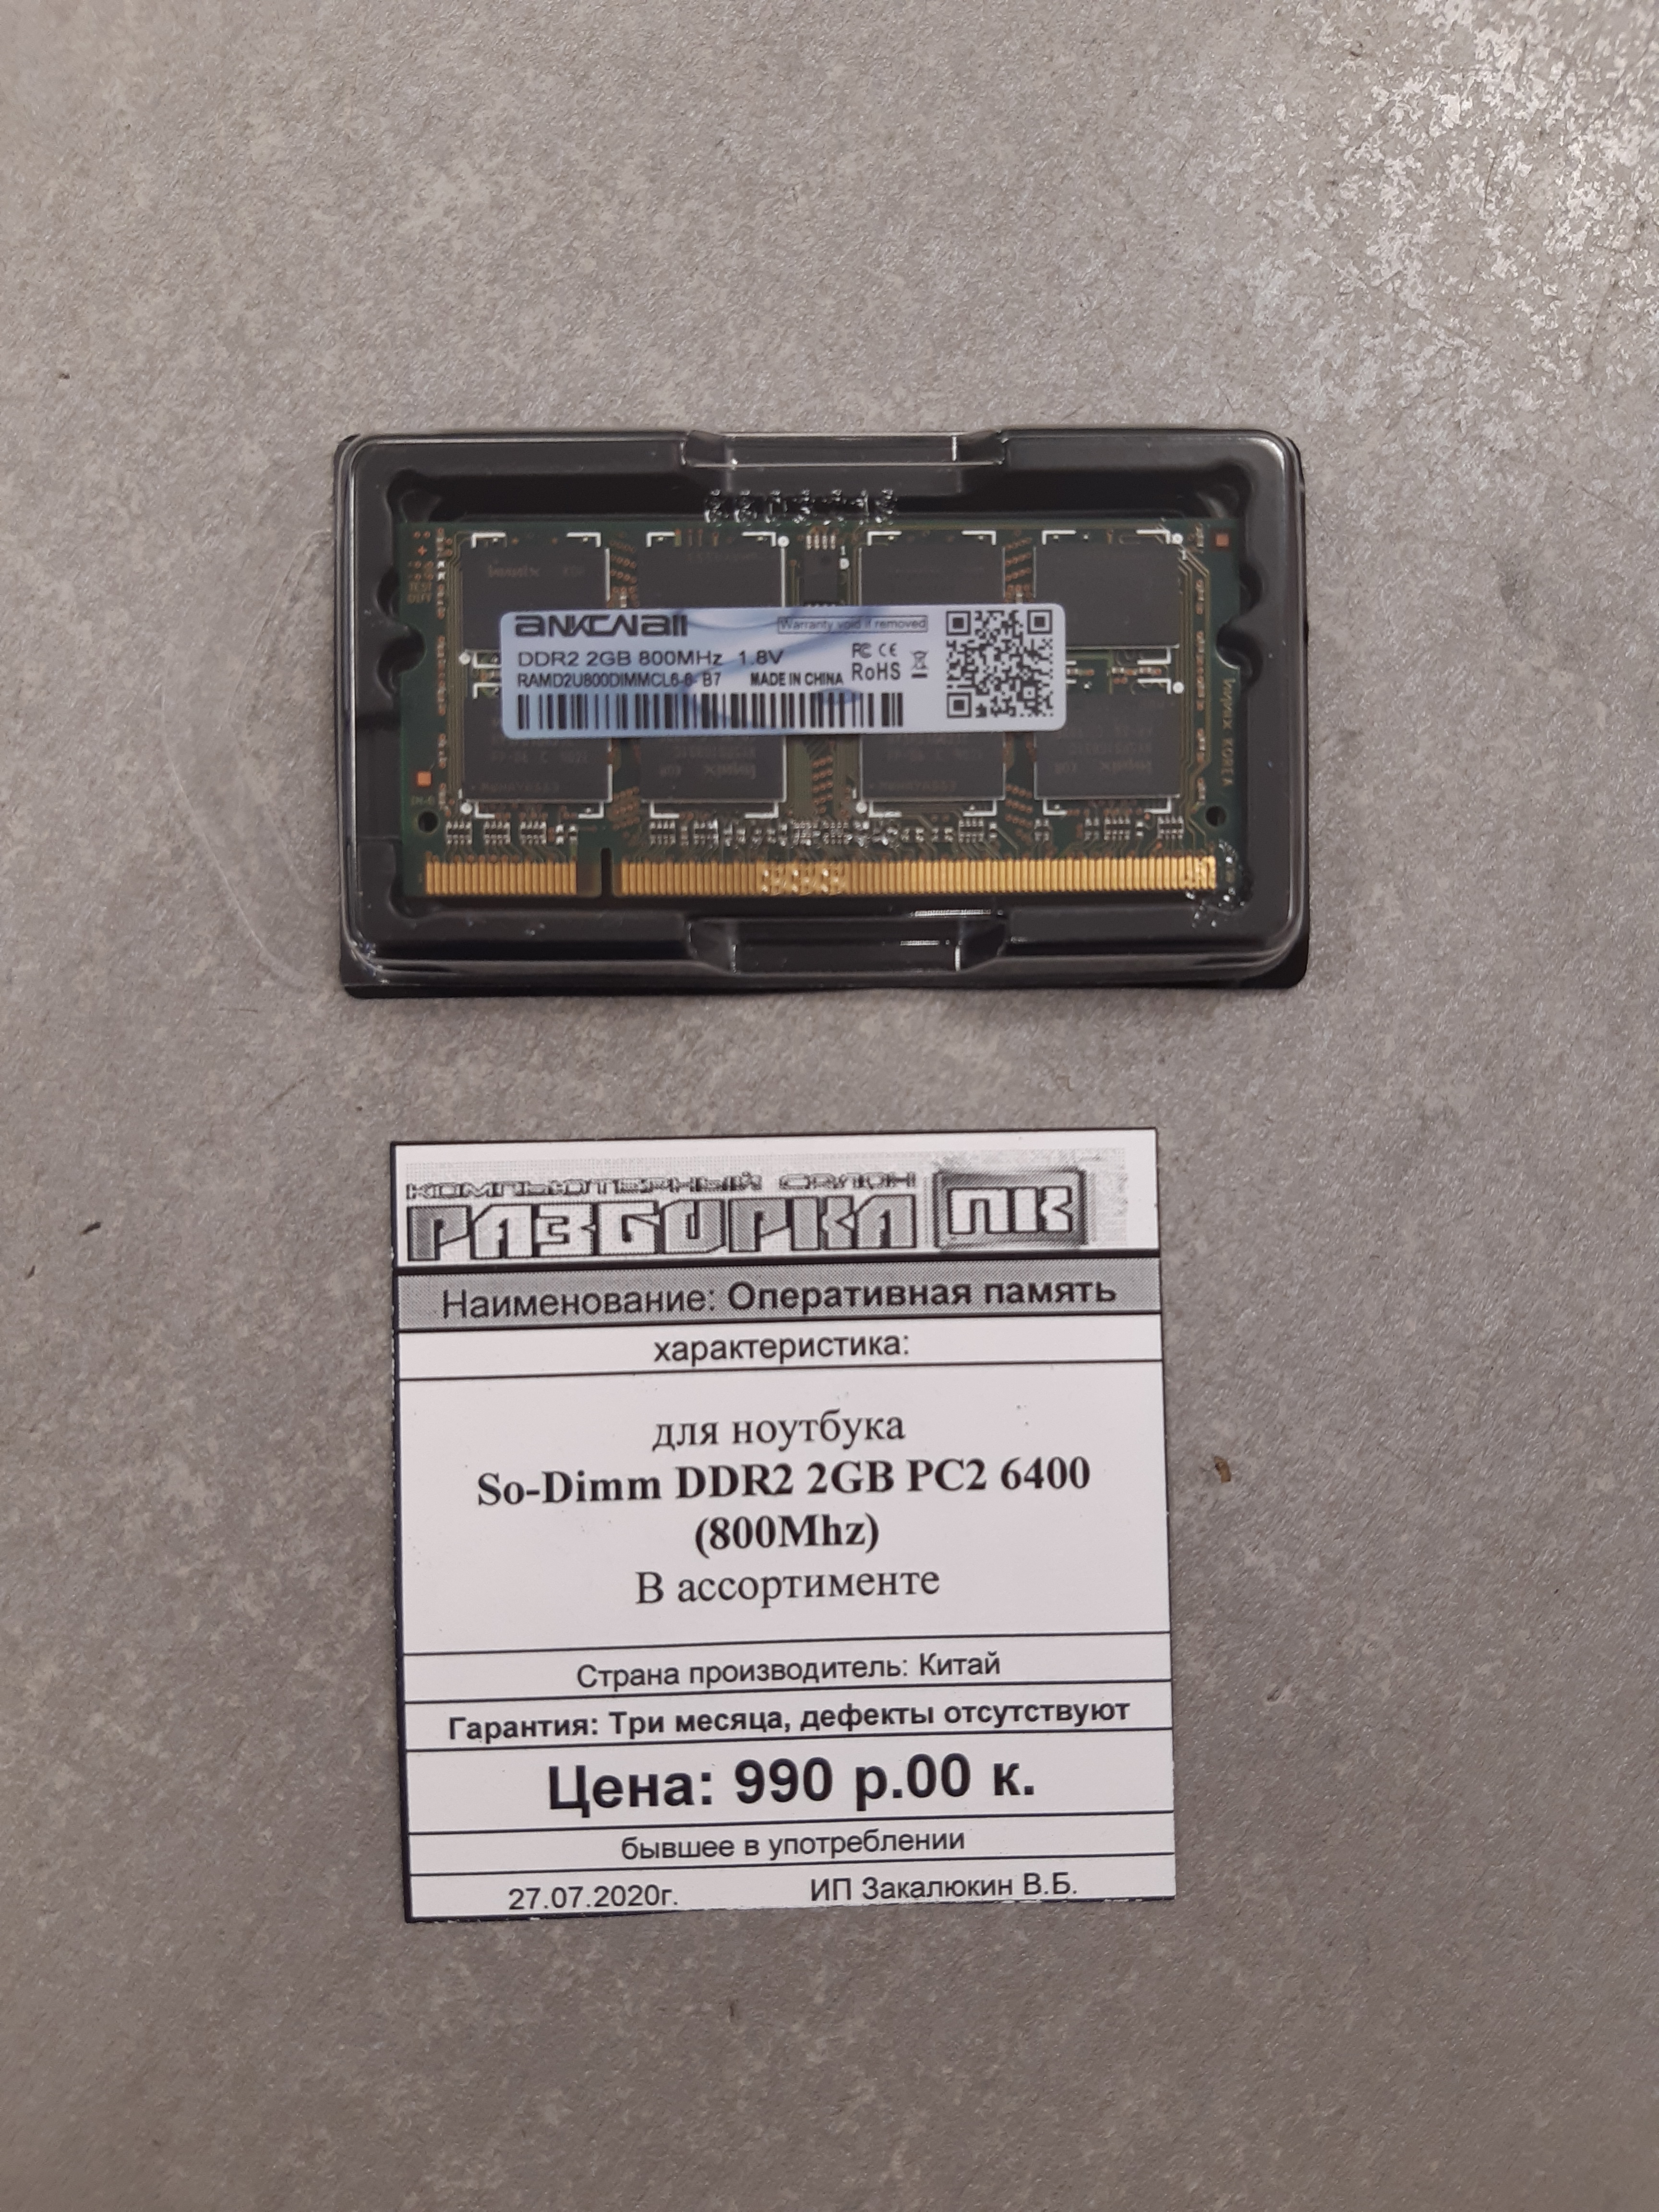 Оперативная память So-DIMM DDR-II 2GB PC2 6400 800Mhz